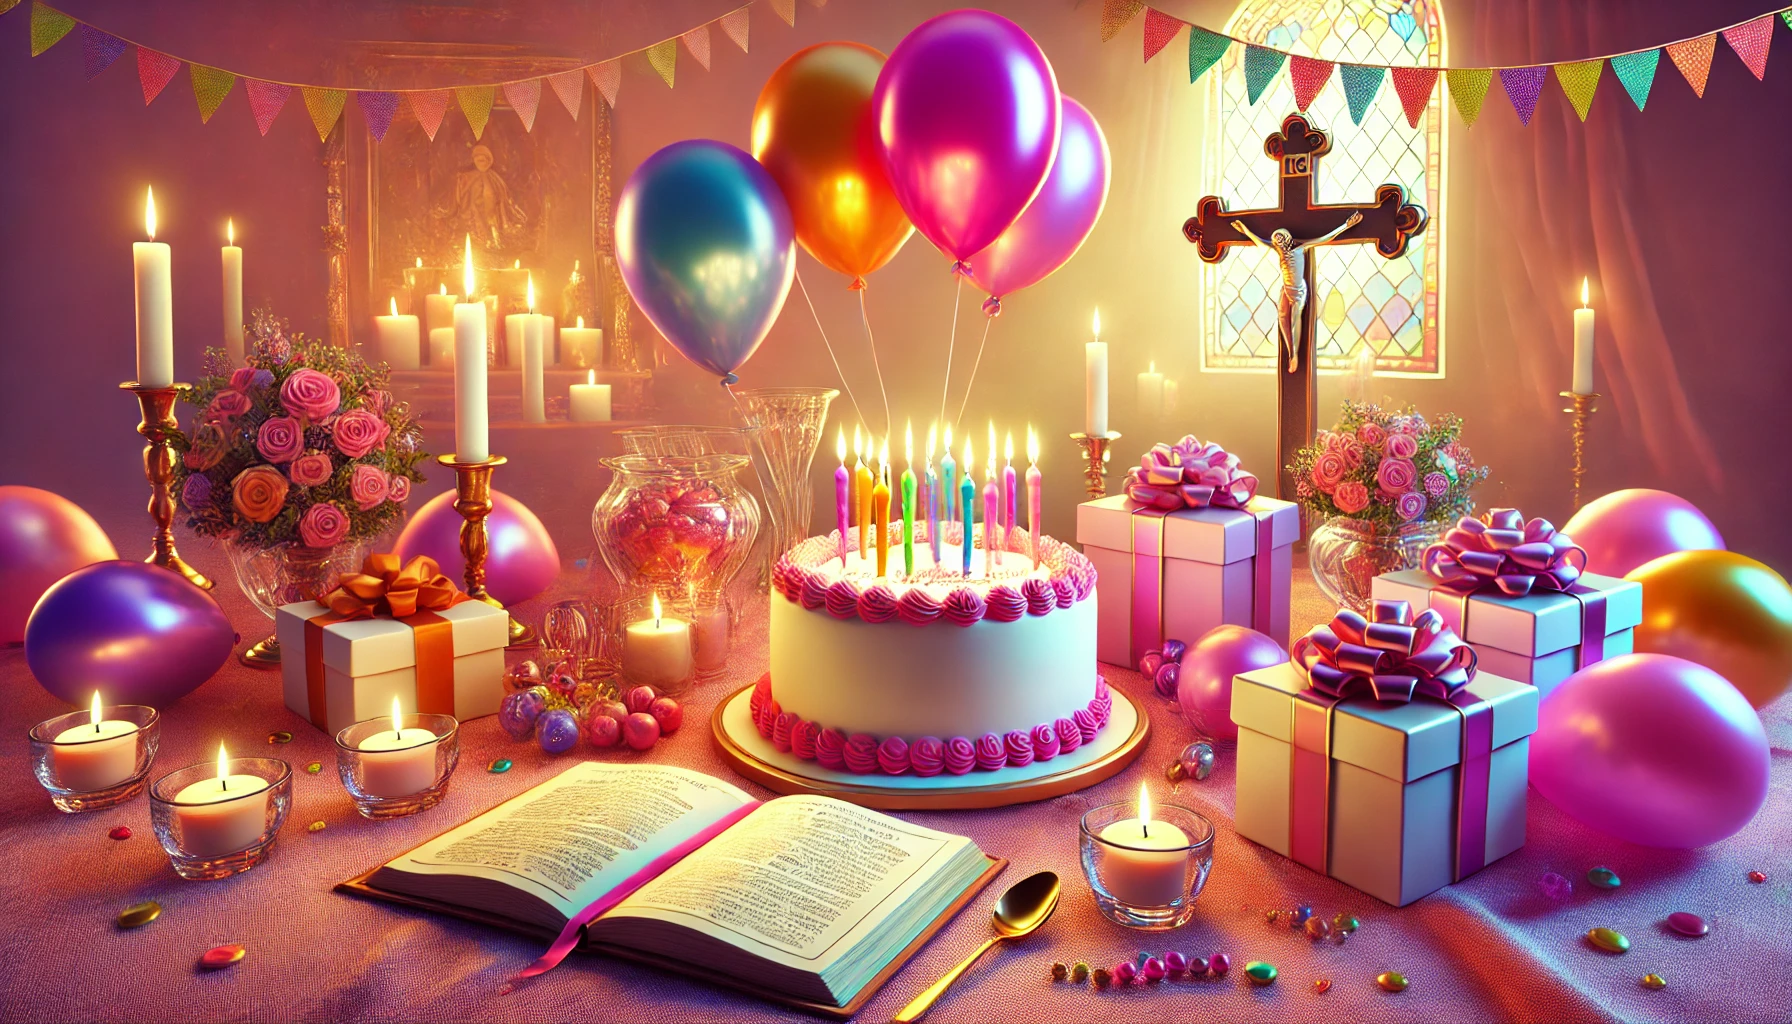 Najpiękniejsze życzenia urodzinowe religijne – odkryj inspirujące błogosławieństwa i podaruj radość bliskim!